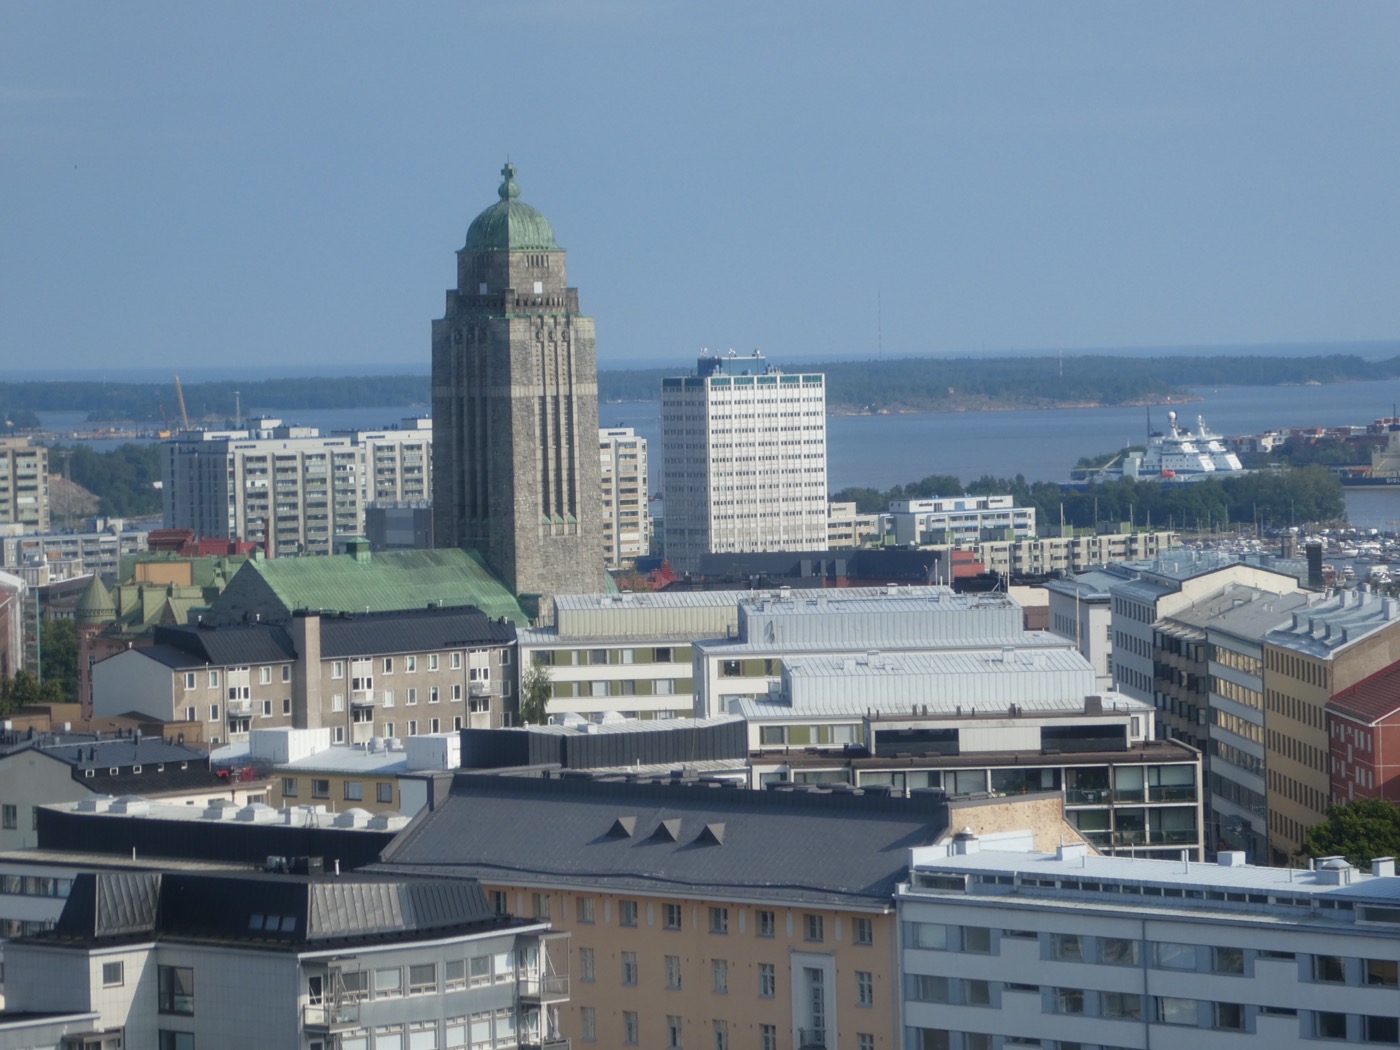 Views from the panorama ride, Linnanmäki Theme Park, Helsinki